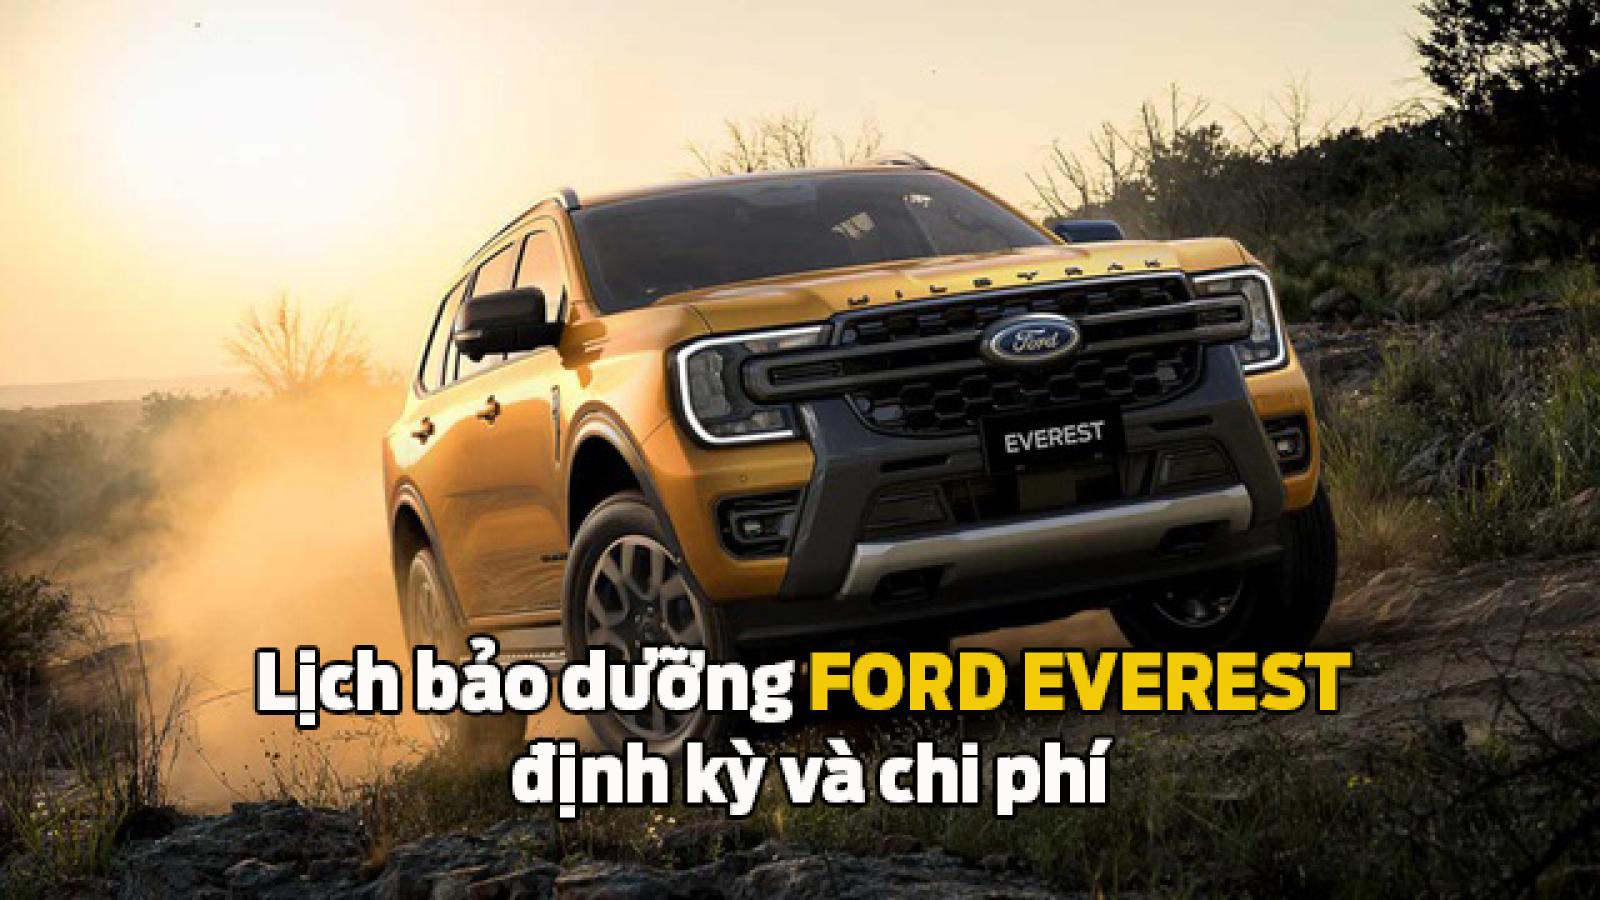 Bảo dưỡng xe Ford Everest: Lịch bảo dưỡng định kỳ và chi phí